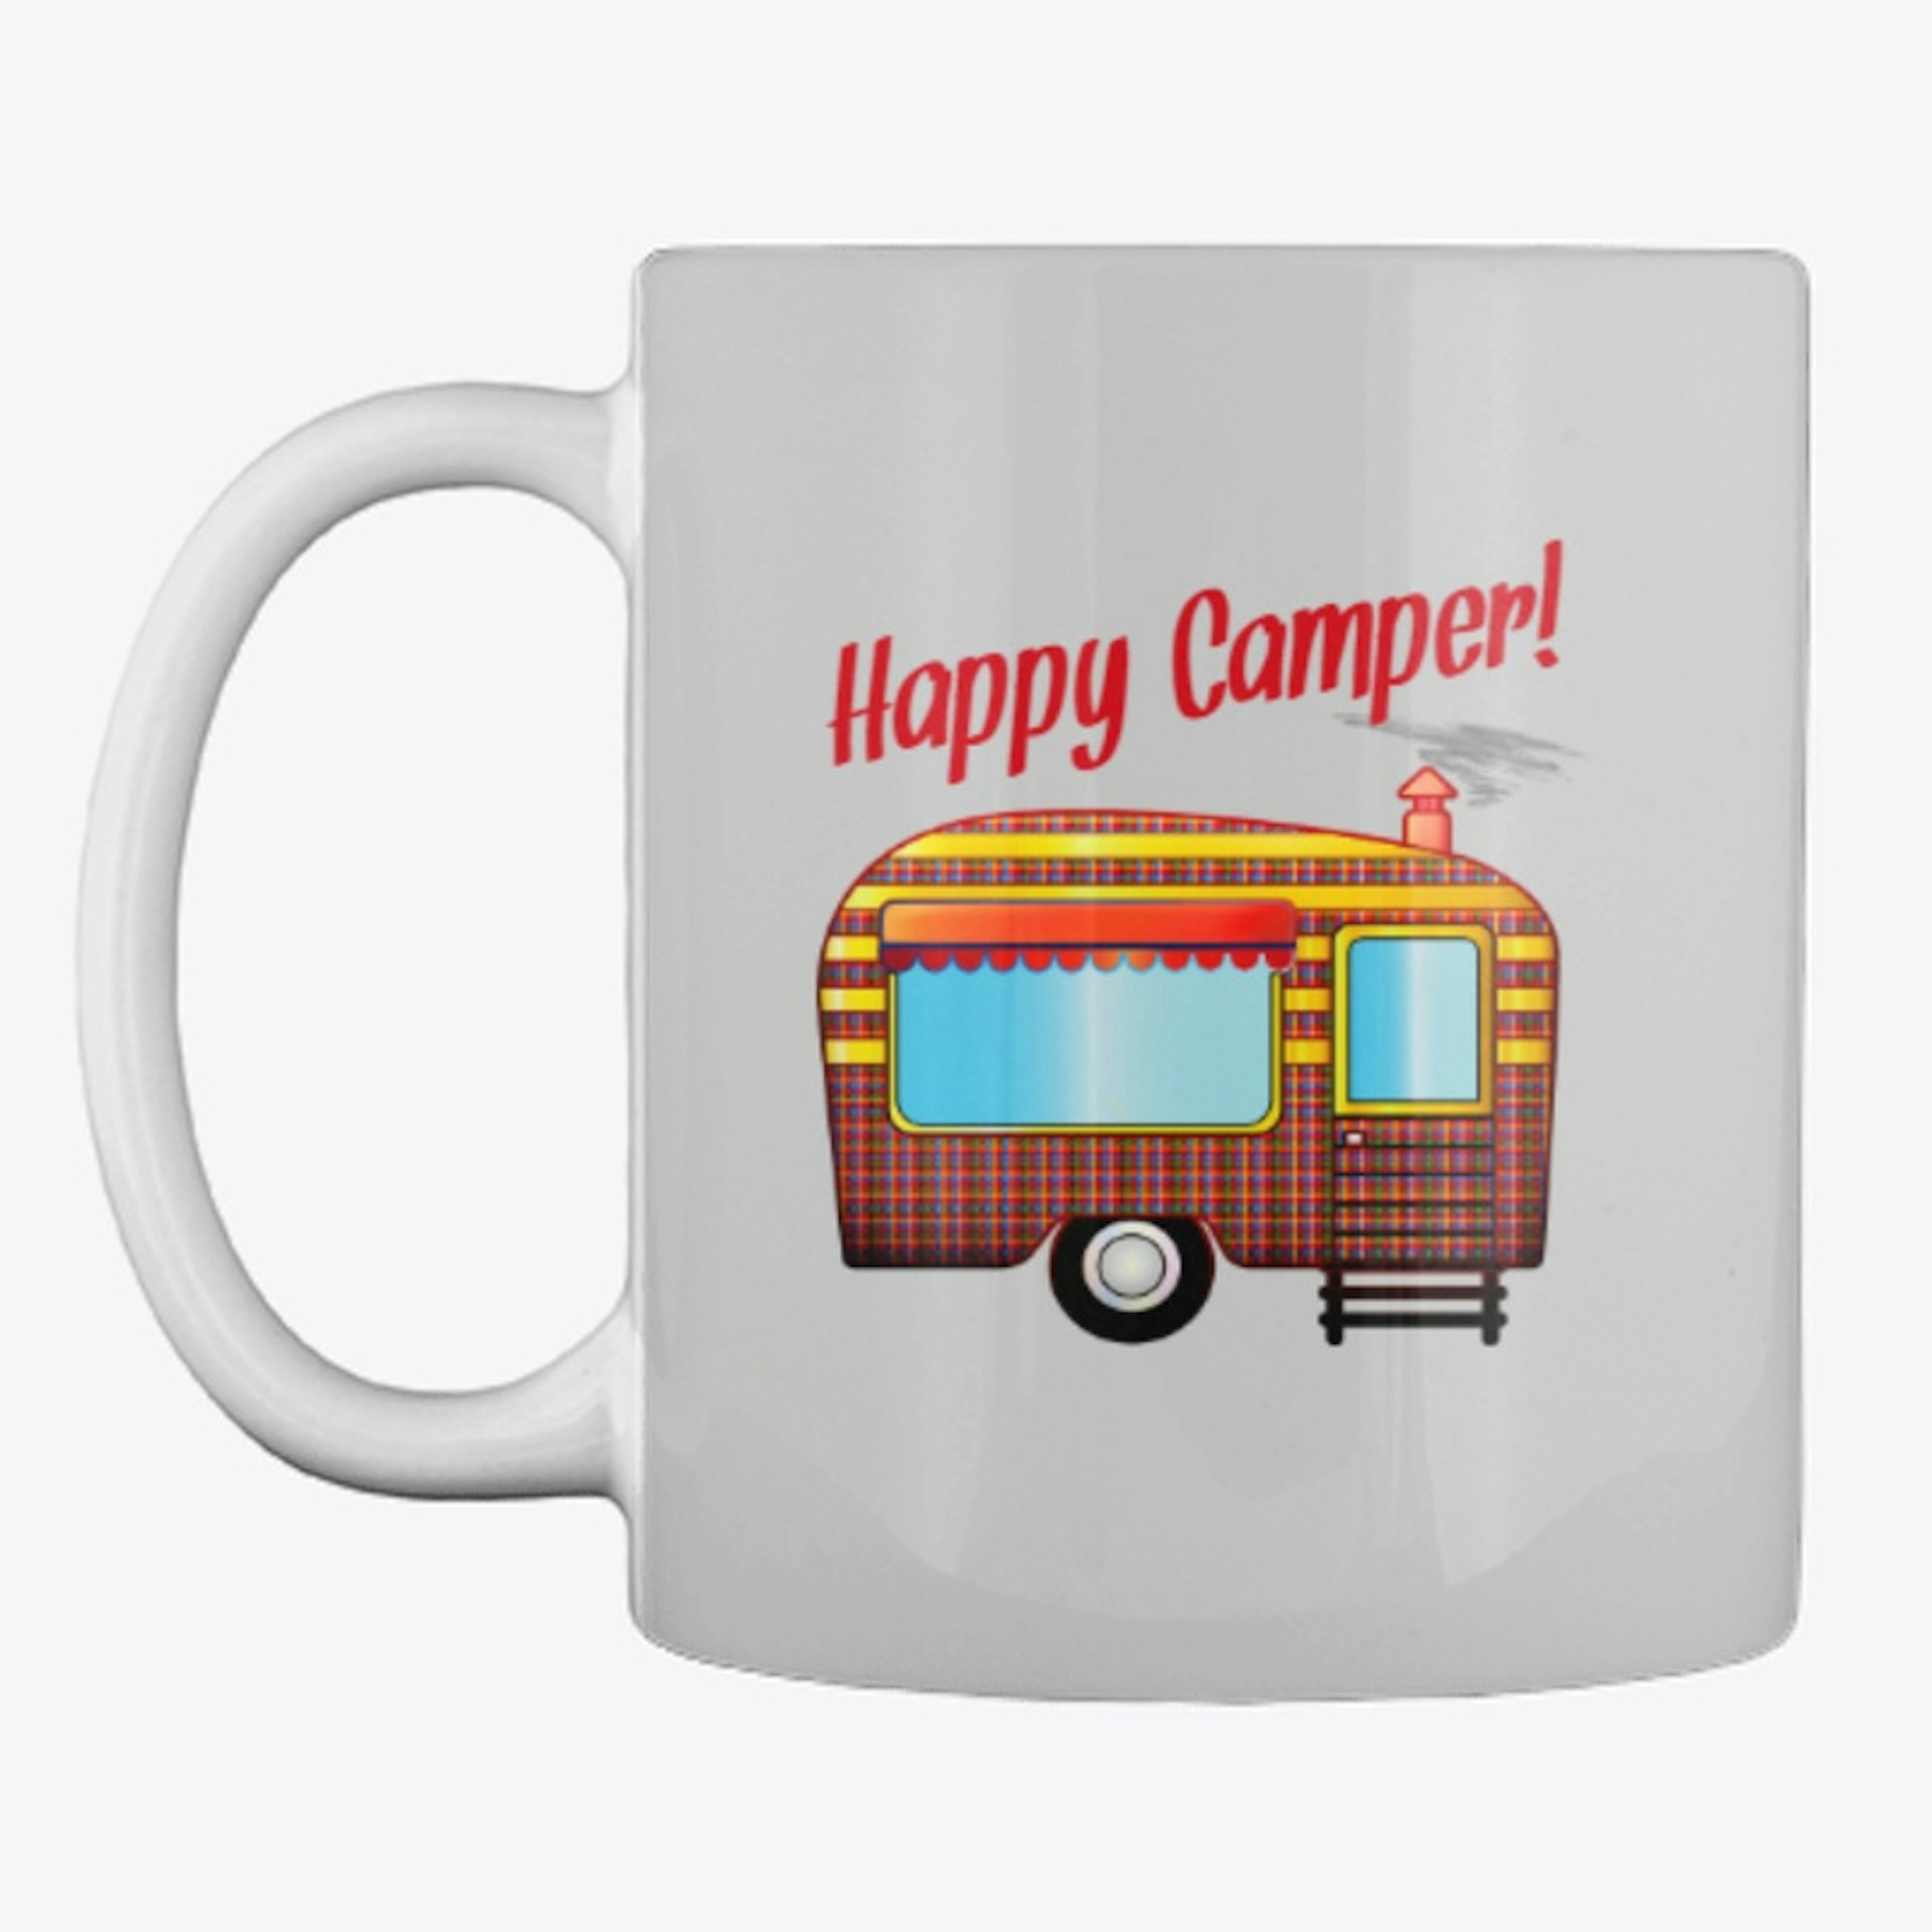 Happy Camper vintage trailer logo mug